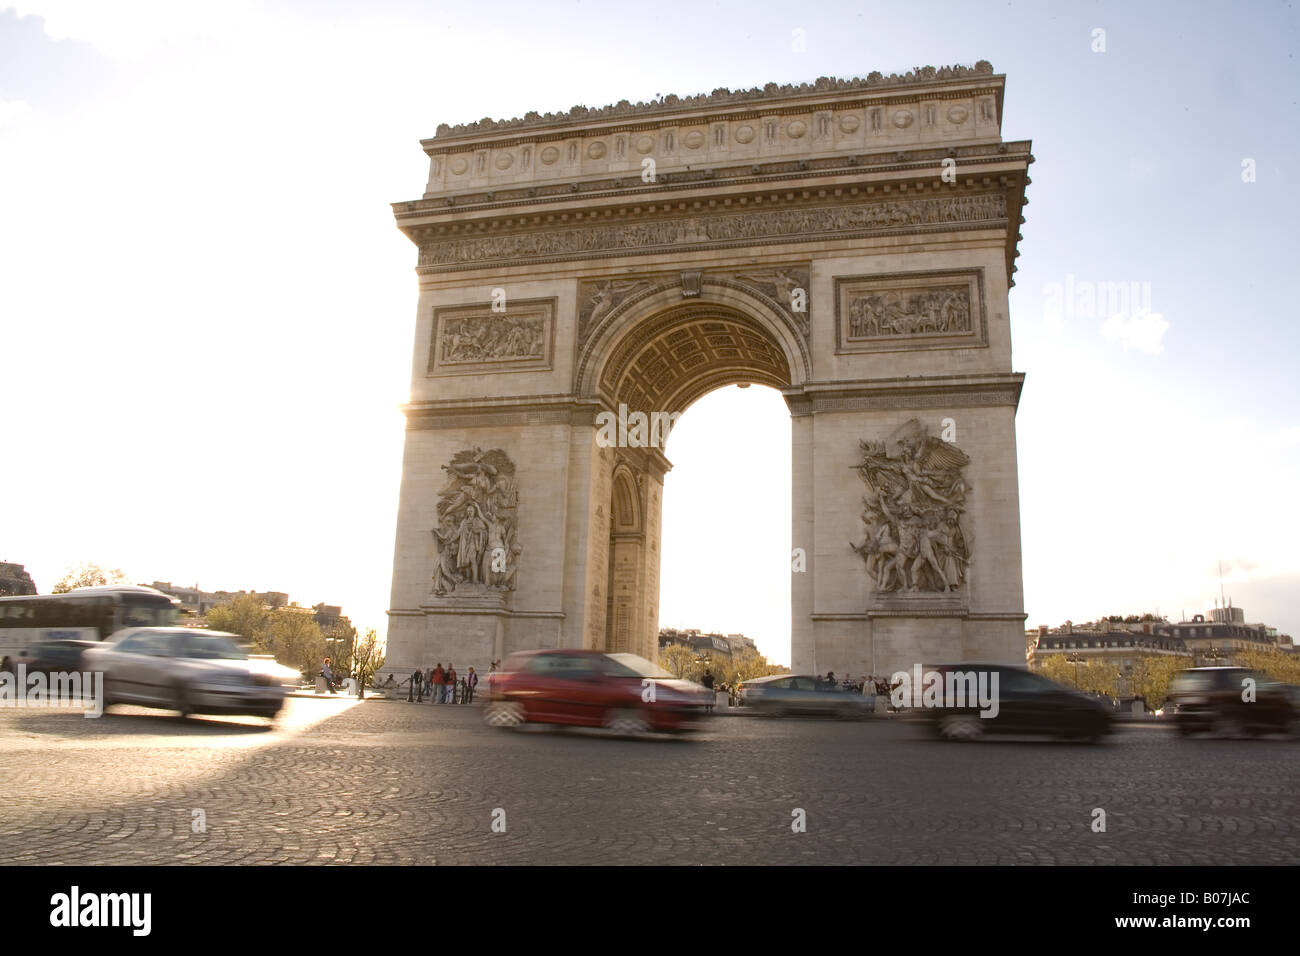 Arc de Triomphe, Champs-Elysees, Paris France. Stock Photo